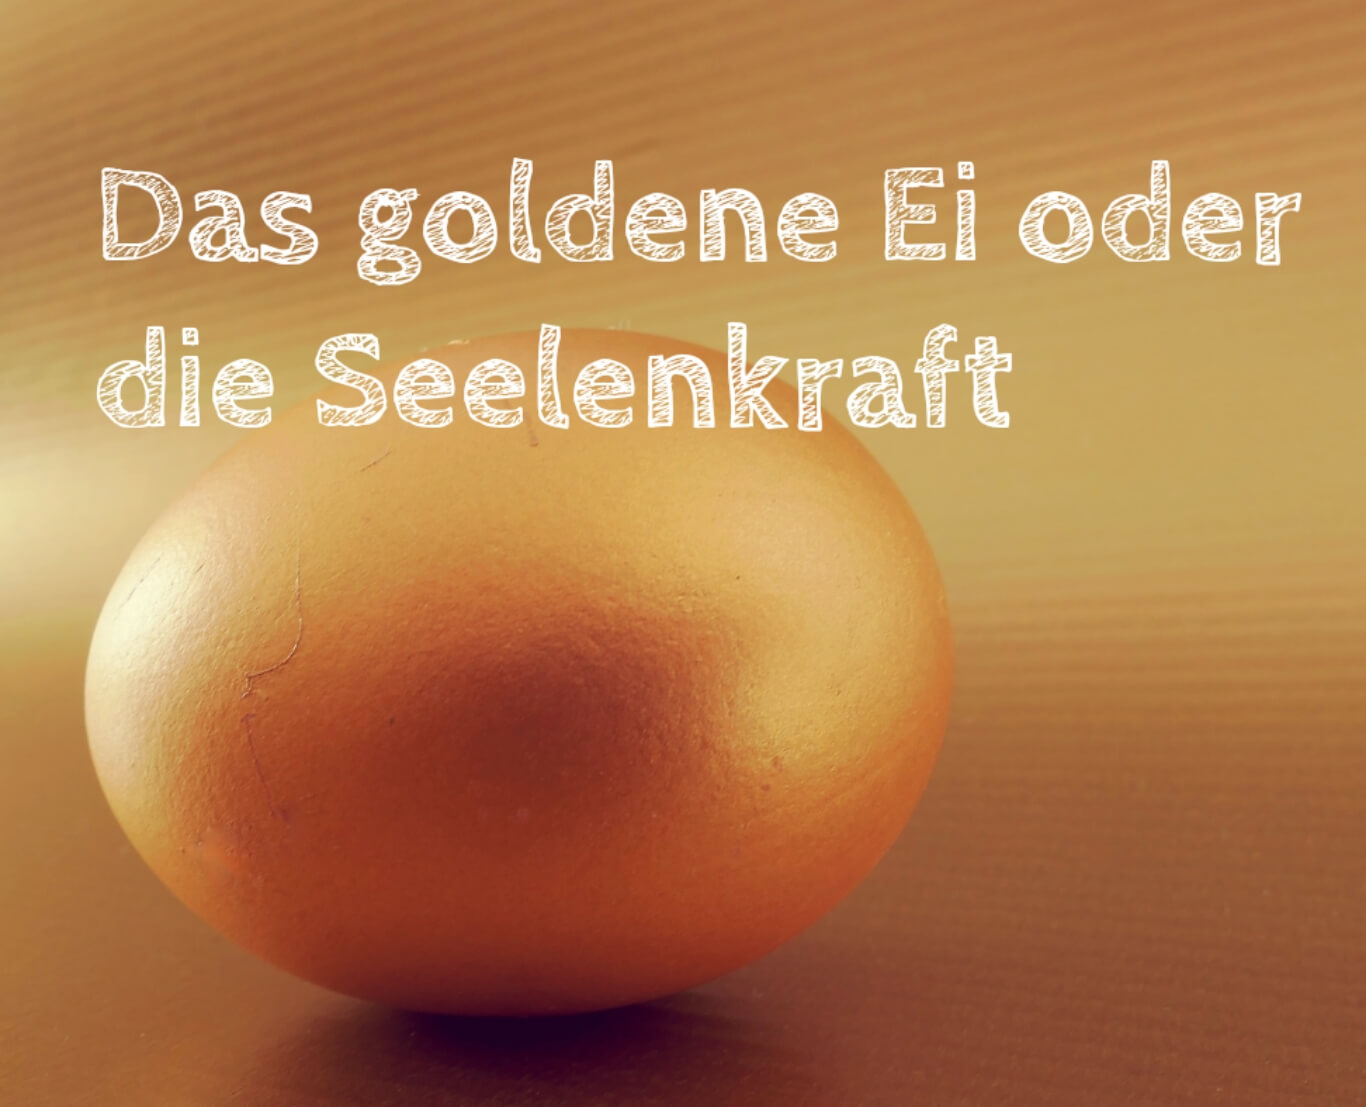 Das goldene Ei oder die Seelenkraft